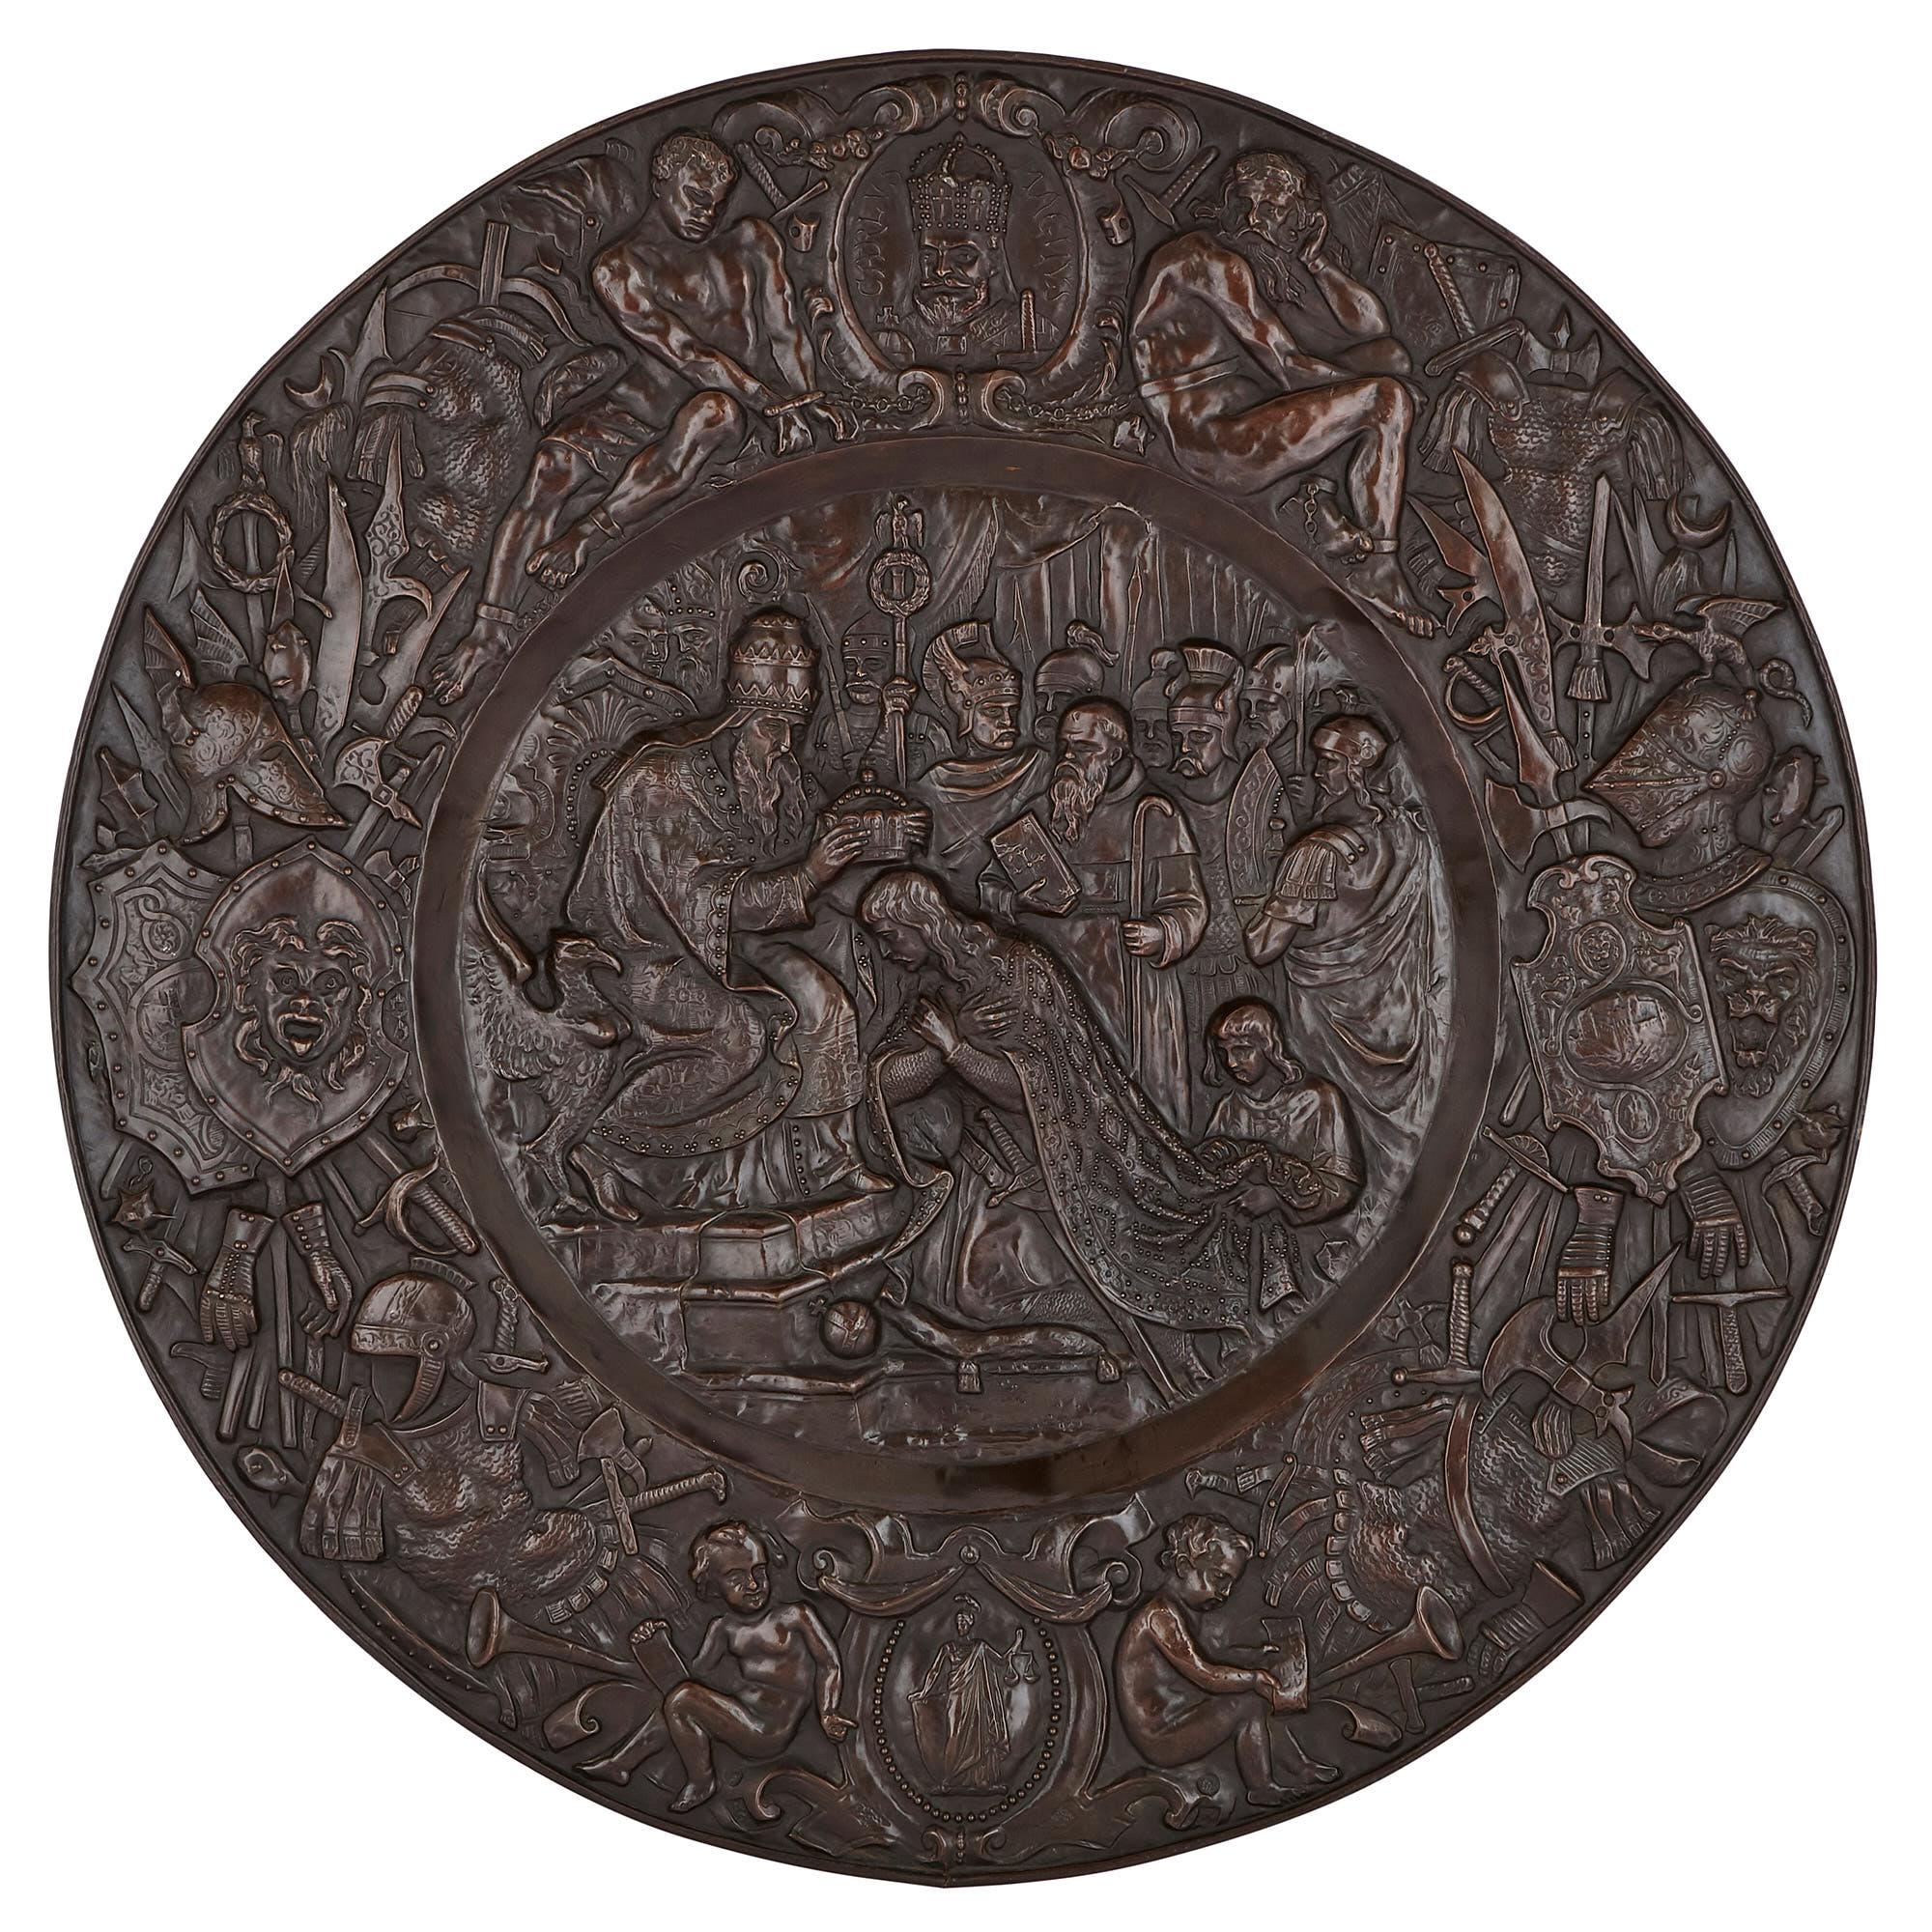 Ces trois panneaux circulaires en cuivre ont été fabriqués au XIXe siècle en France. Elles sont décorées de thèmes bibliques et chrétiens tirés de la vie du roi Salomon (m. 931 av. J.-C.) et du roi Charlemagne (742 - 814 ap. J.-C.). 

L'un des